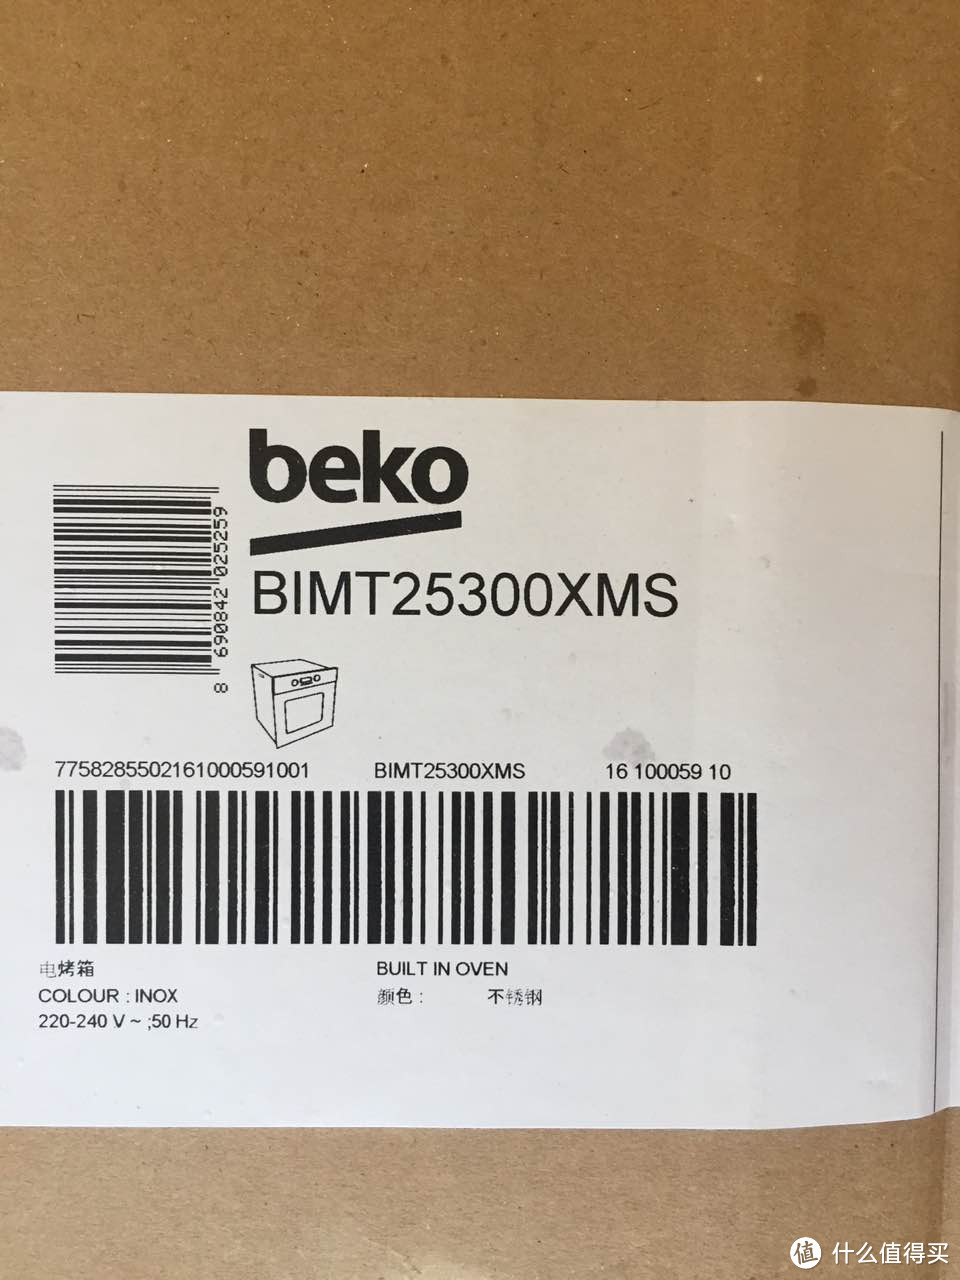 颜值即正义，何况还不贵—Beko 倍科 BIMT25300 原装进口烤箱开箱